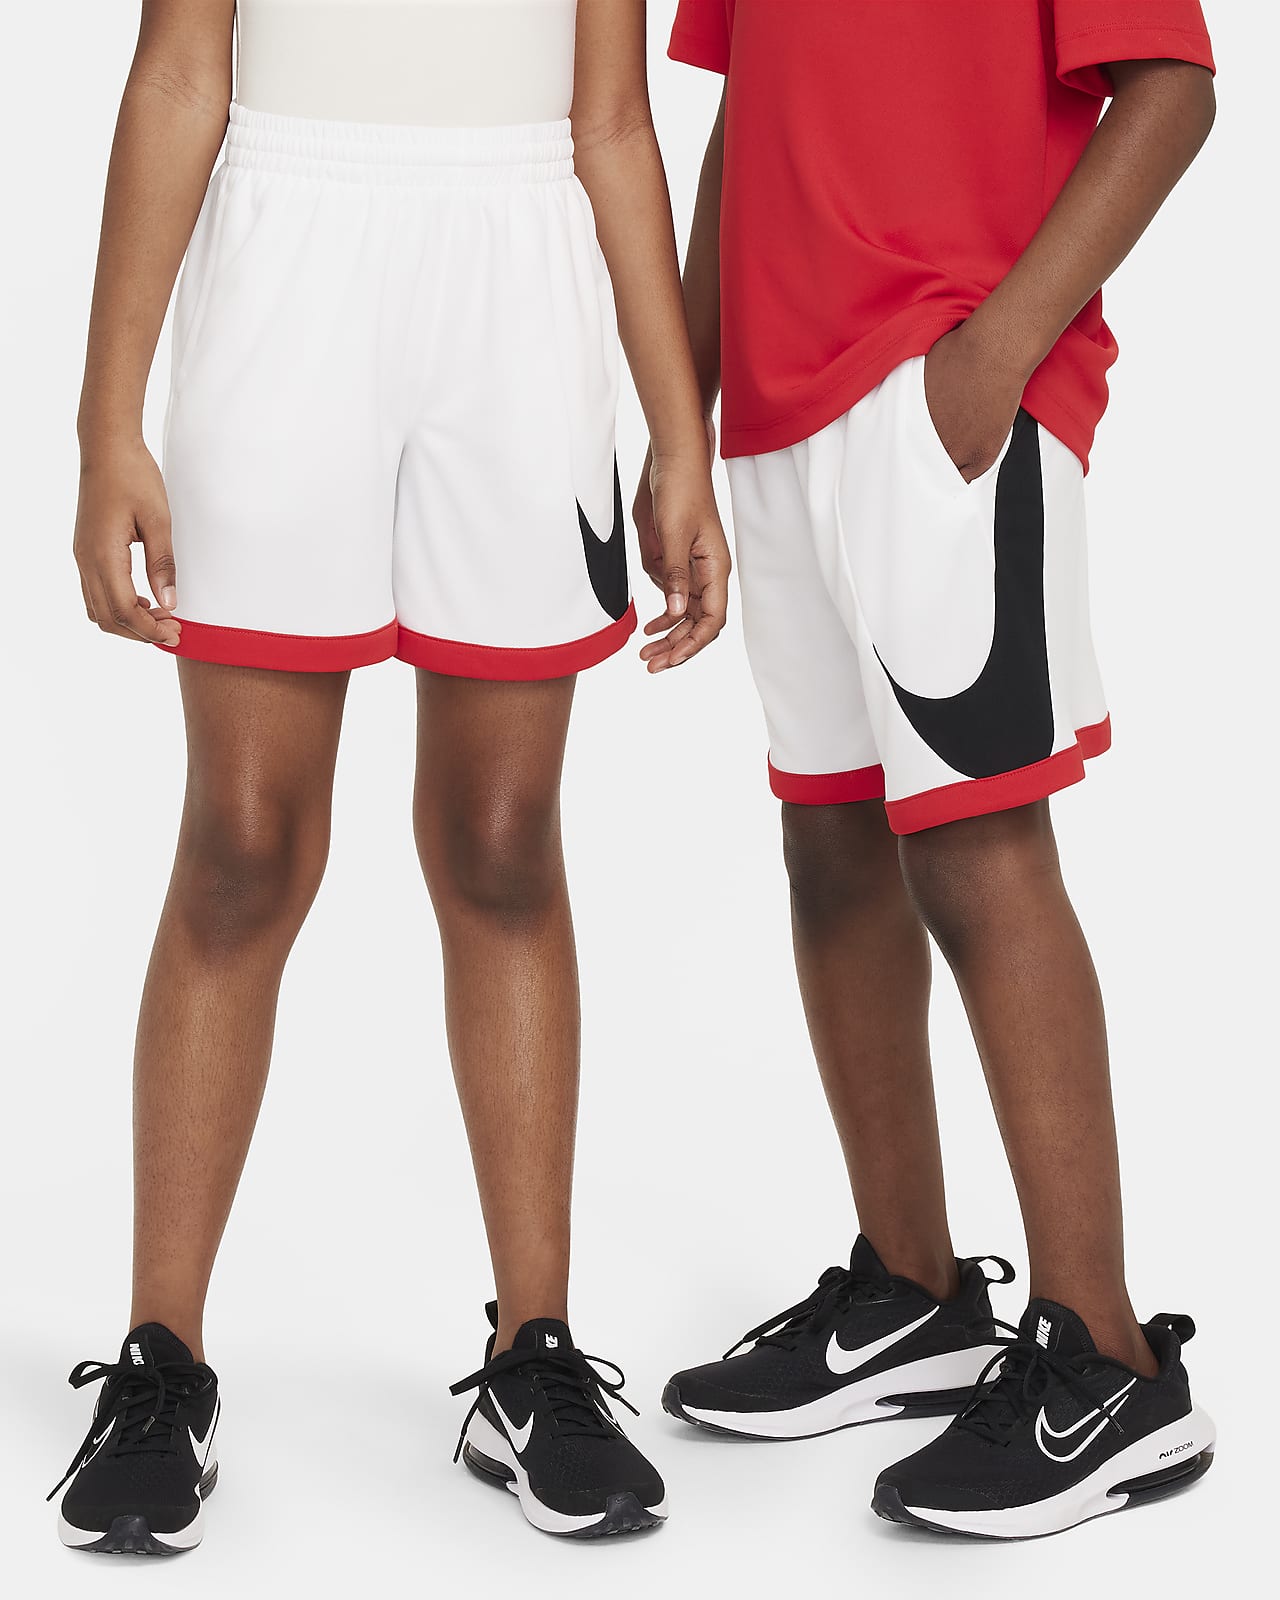 Nike Multi+ Pantalons curts de training Dri-FIT - Nen/a